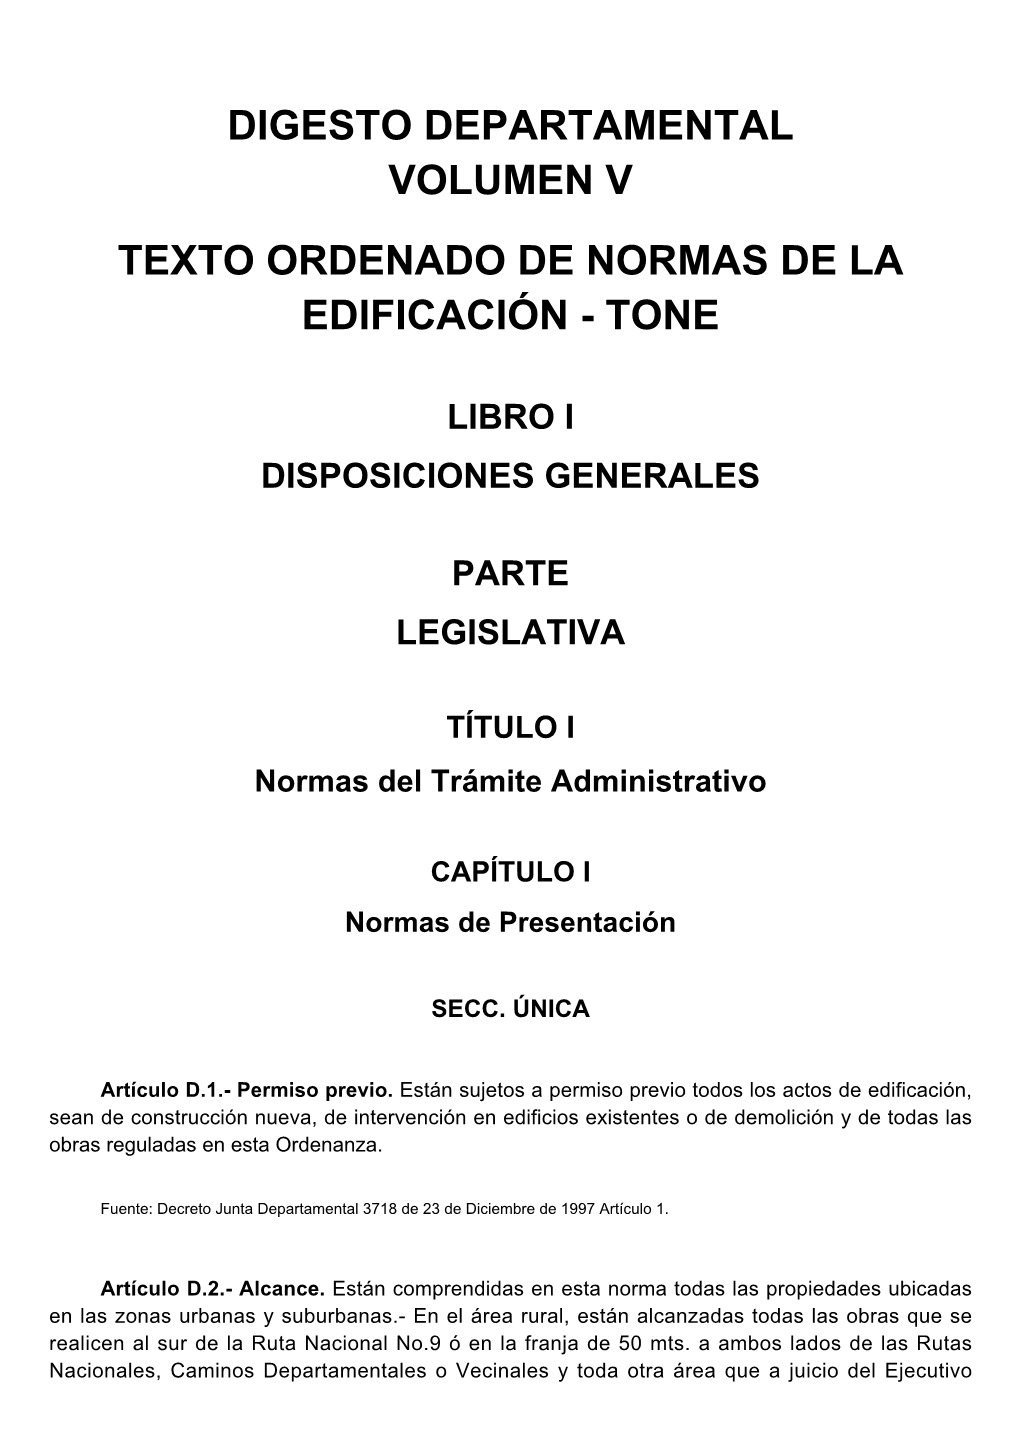 Digesto Departamental Volumen V Texto Ordenado De Normas De La Edificación - Tone